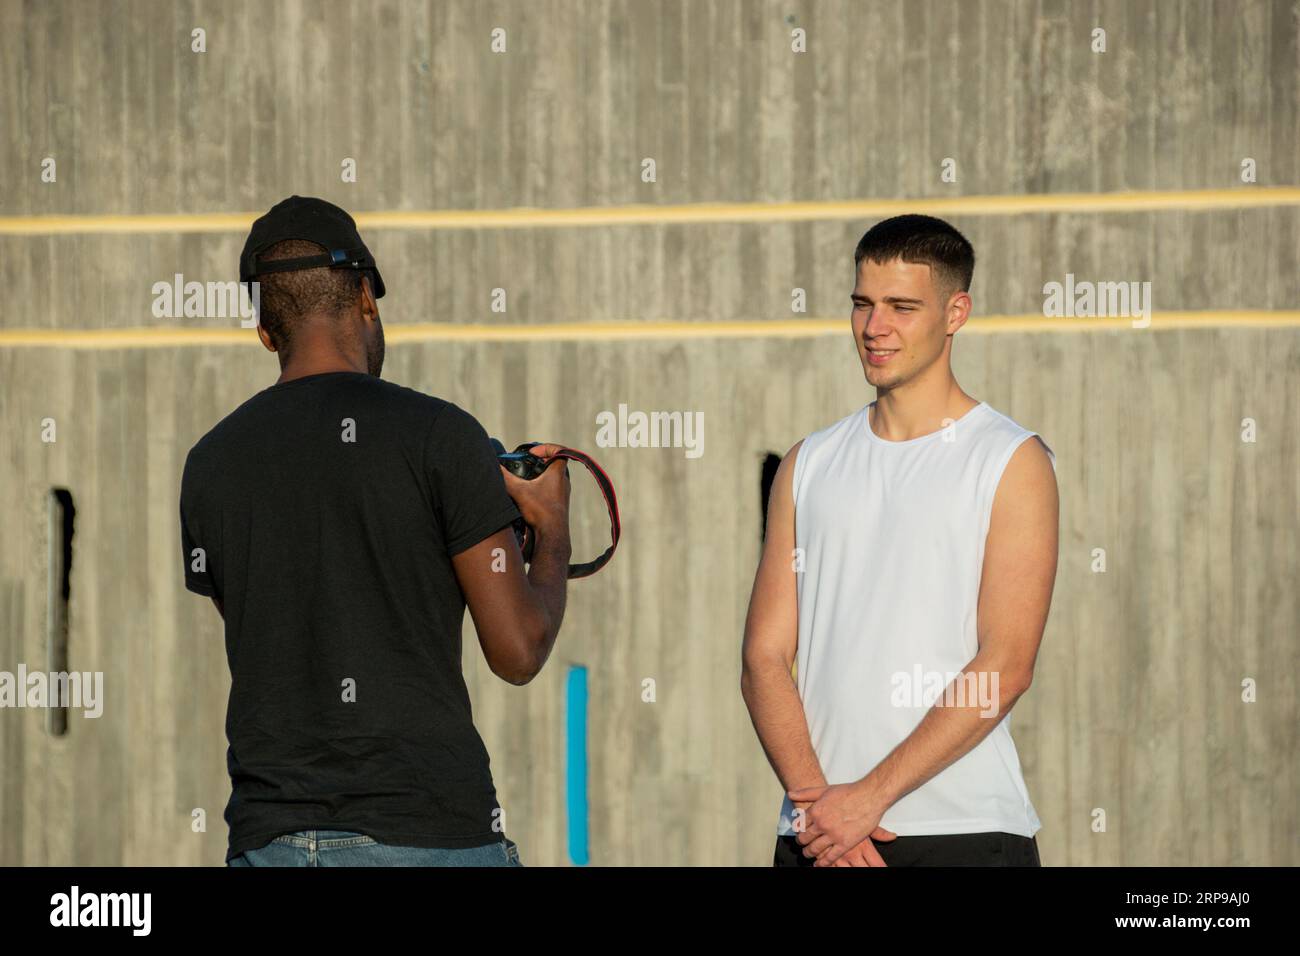 Photographe professionnel afro-américain prend des photos d'un jeune joueur de basket caucasien Banque D'Images